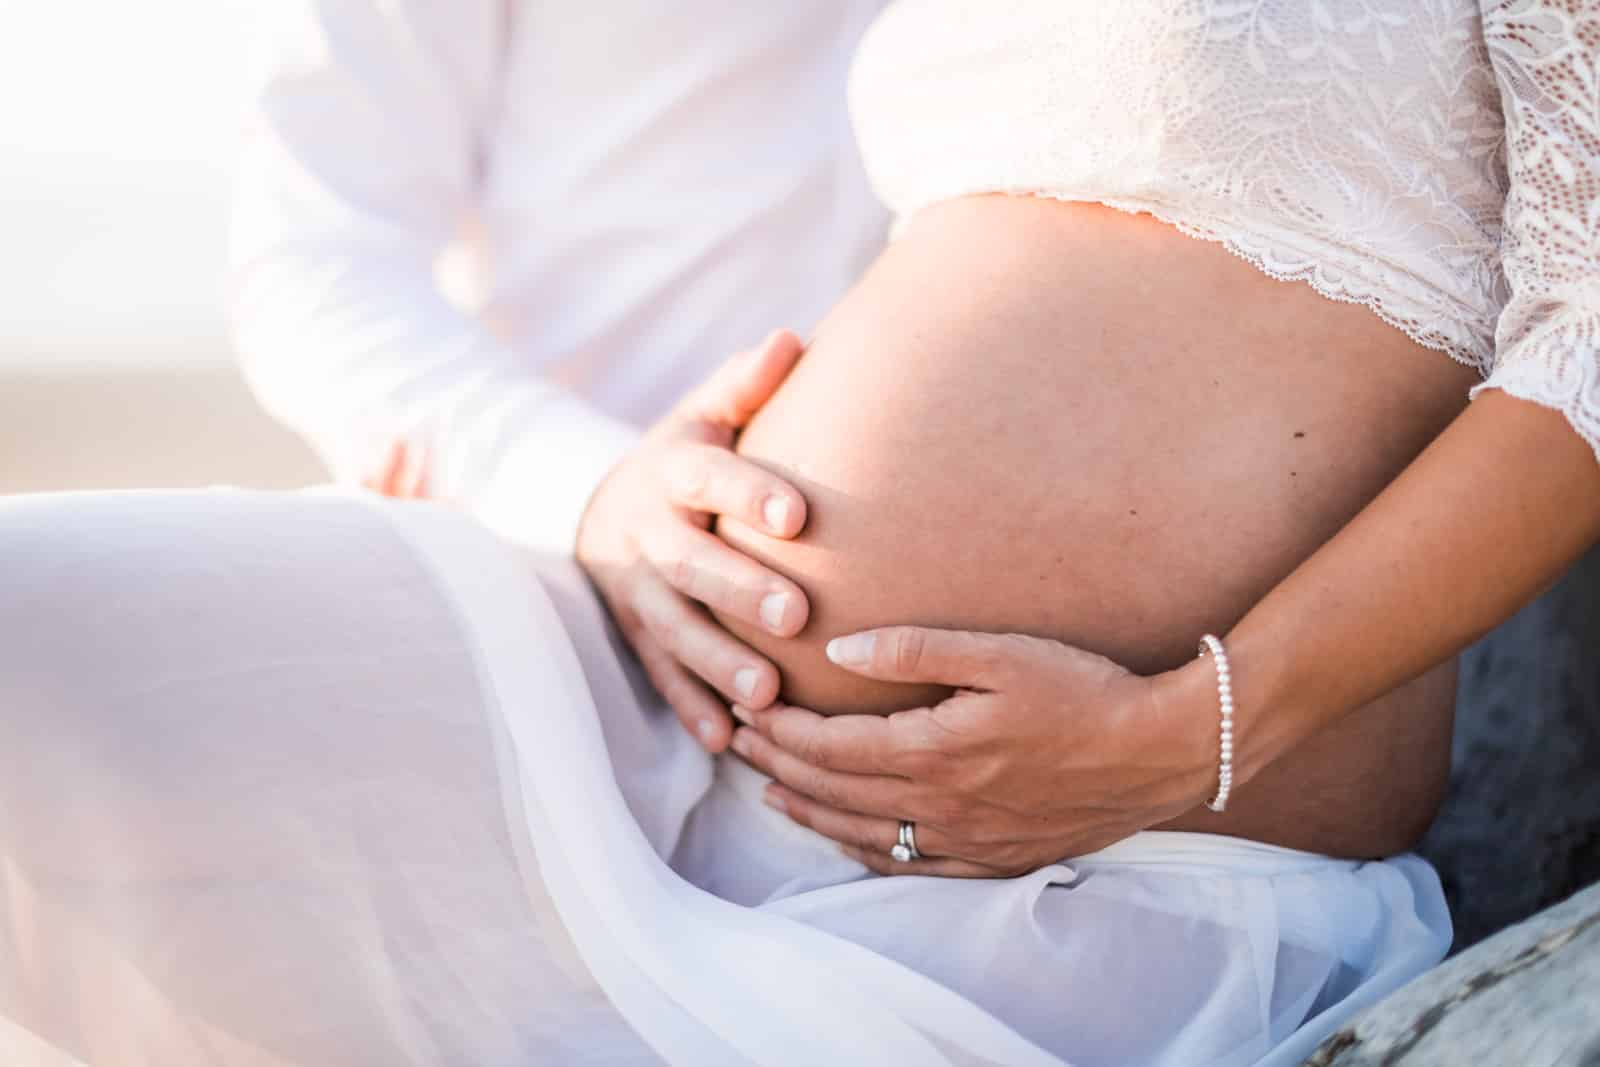 Photographie de Mathieu Dété, photographe de mariage et naissance à Saint-Gilles de la Réunion 974, présentant le ventre rond d'une femme enceinte lors d'une séance grossesse